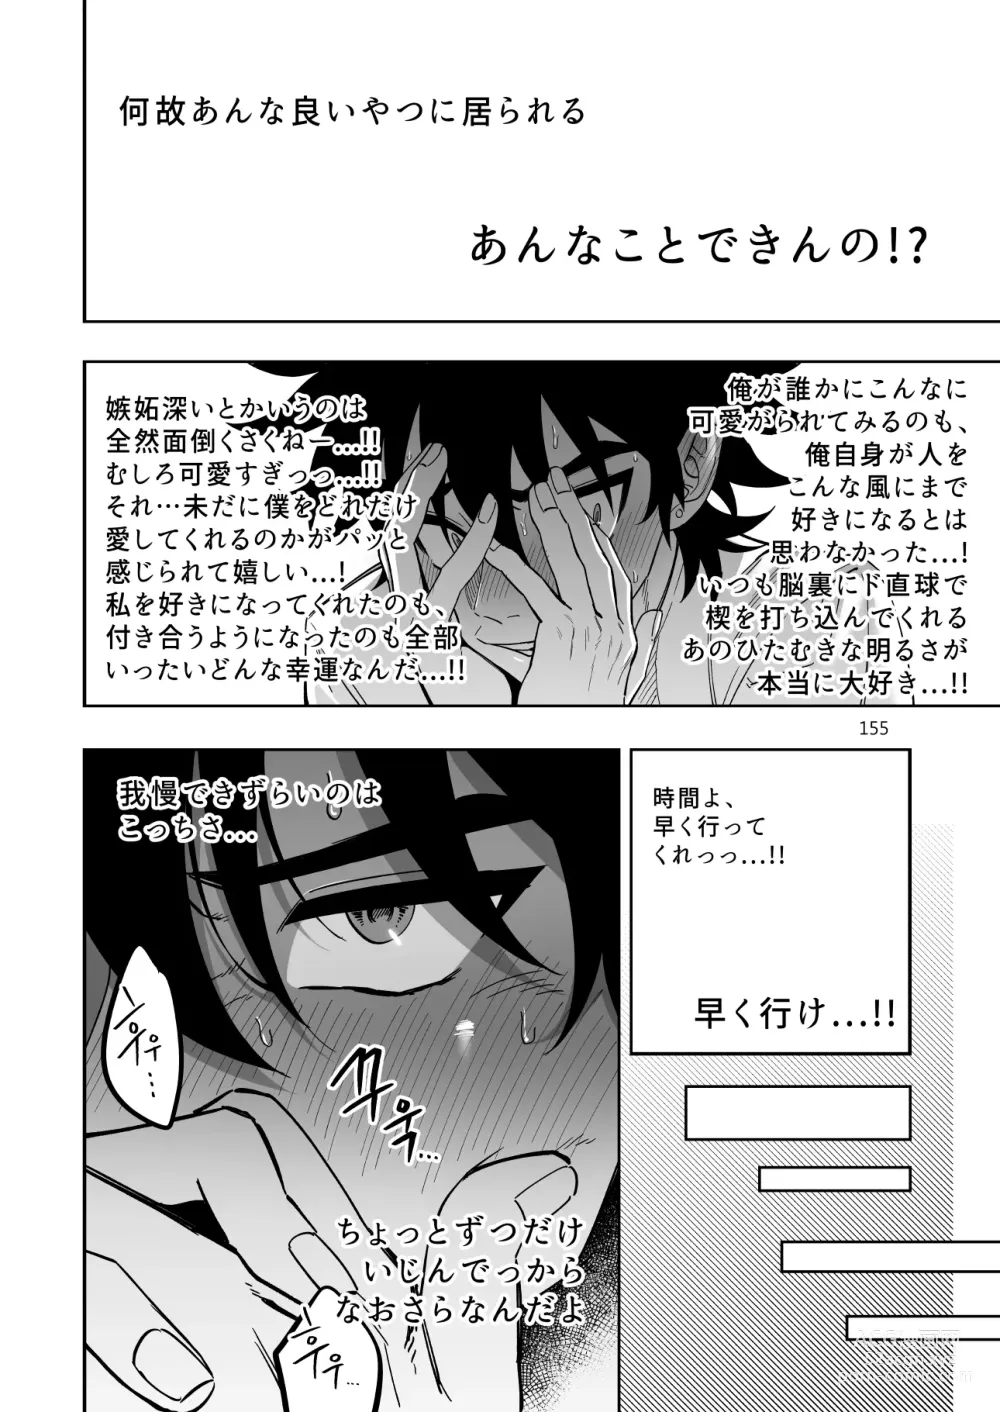 Page 156 of doujinshi Final Countdown